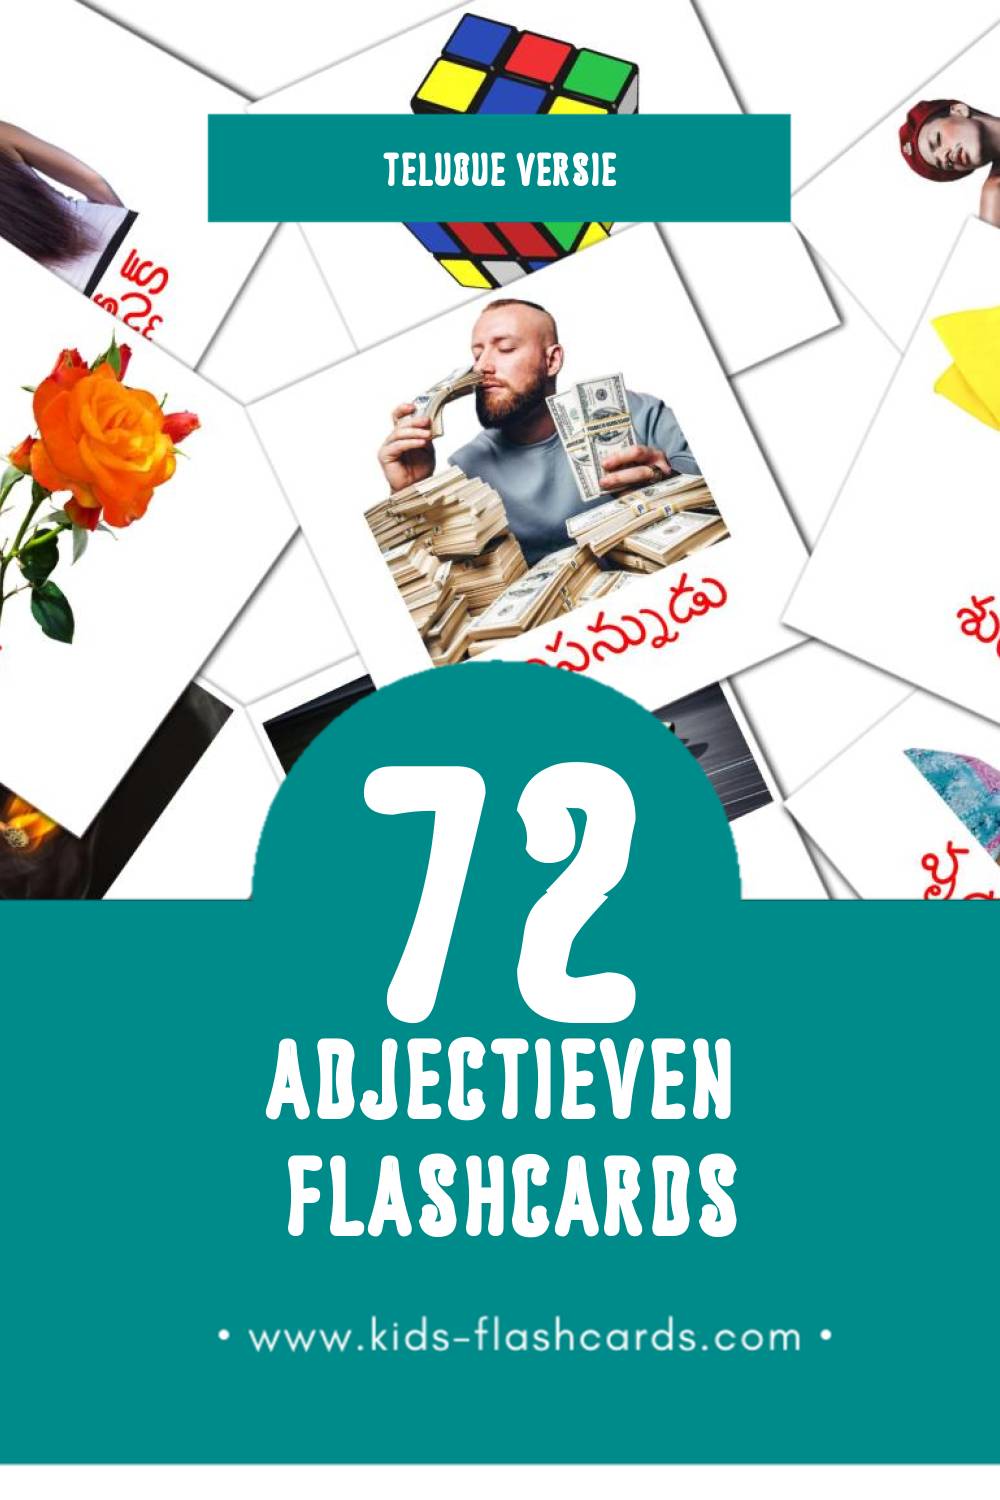 Visuele విశేషణాలు Flashcards voor Kleuters (72 kaarten in het Telugu)